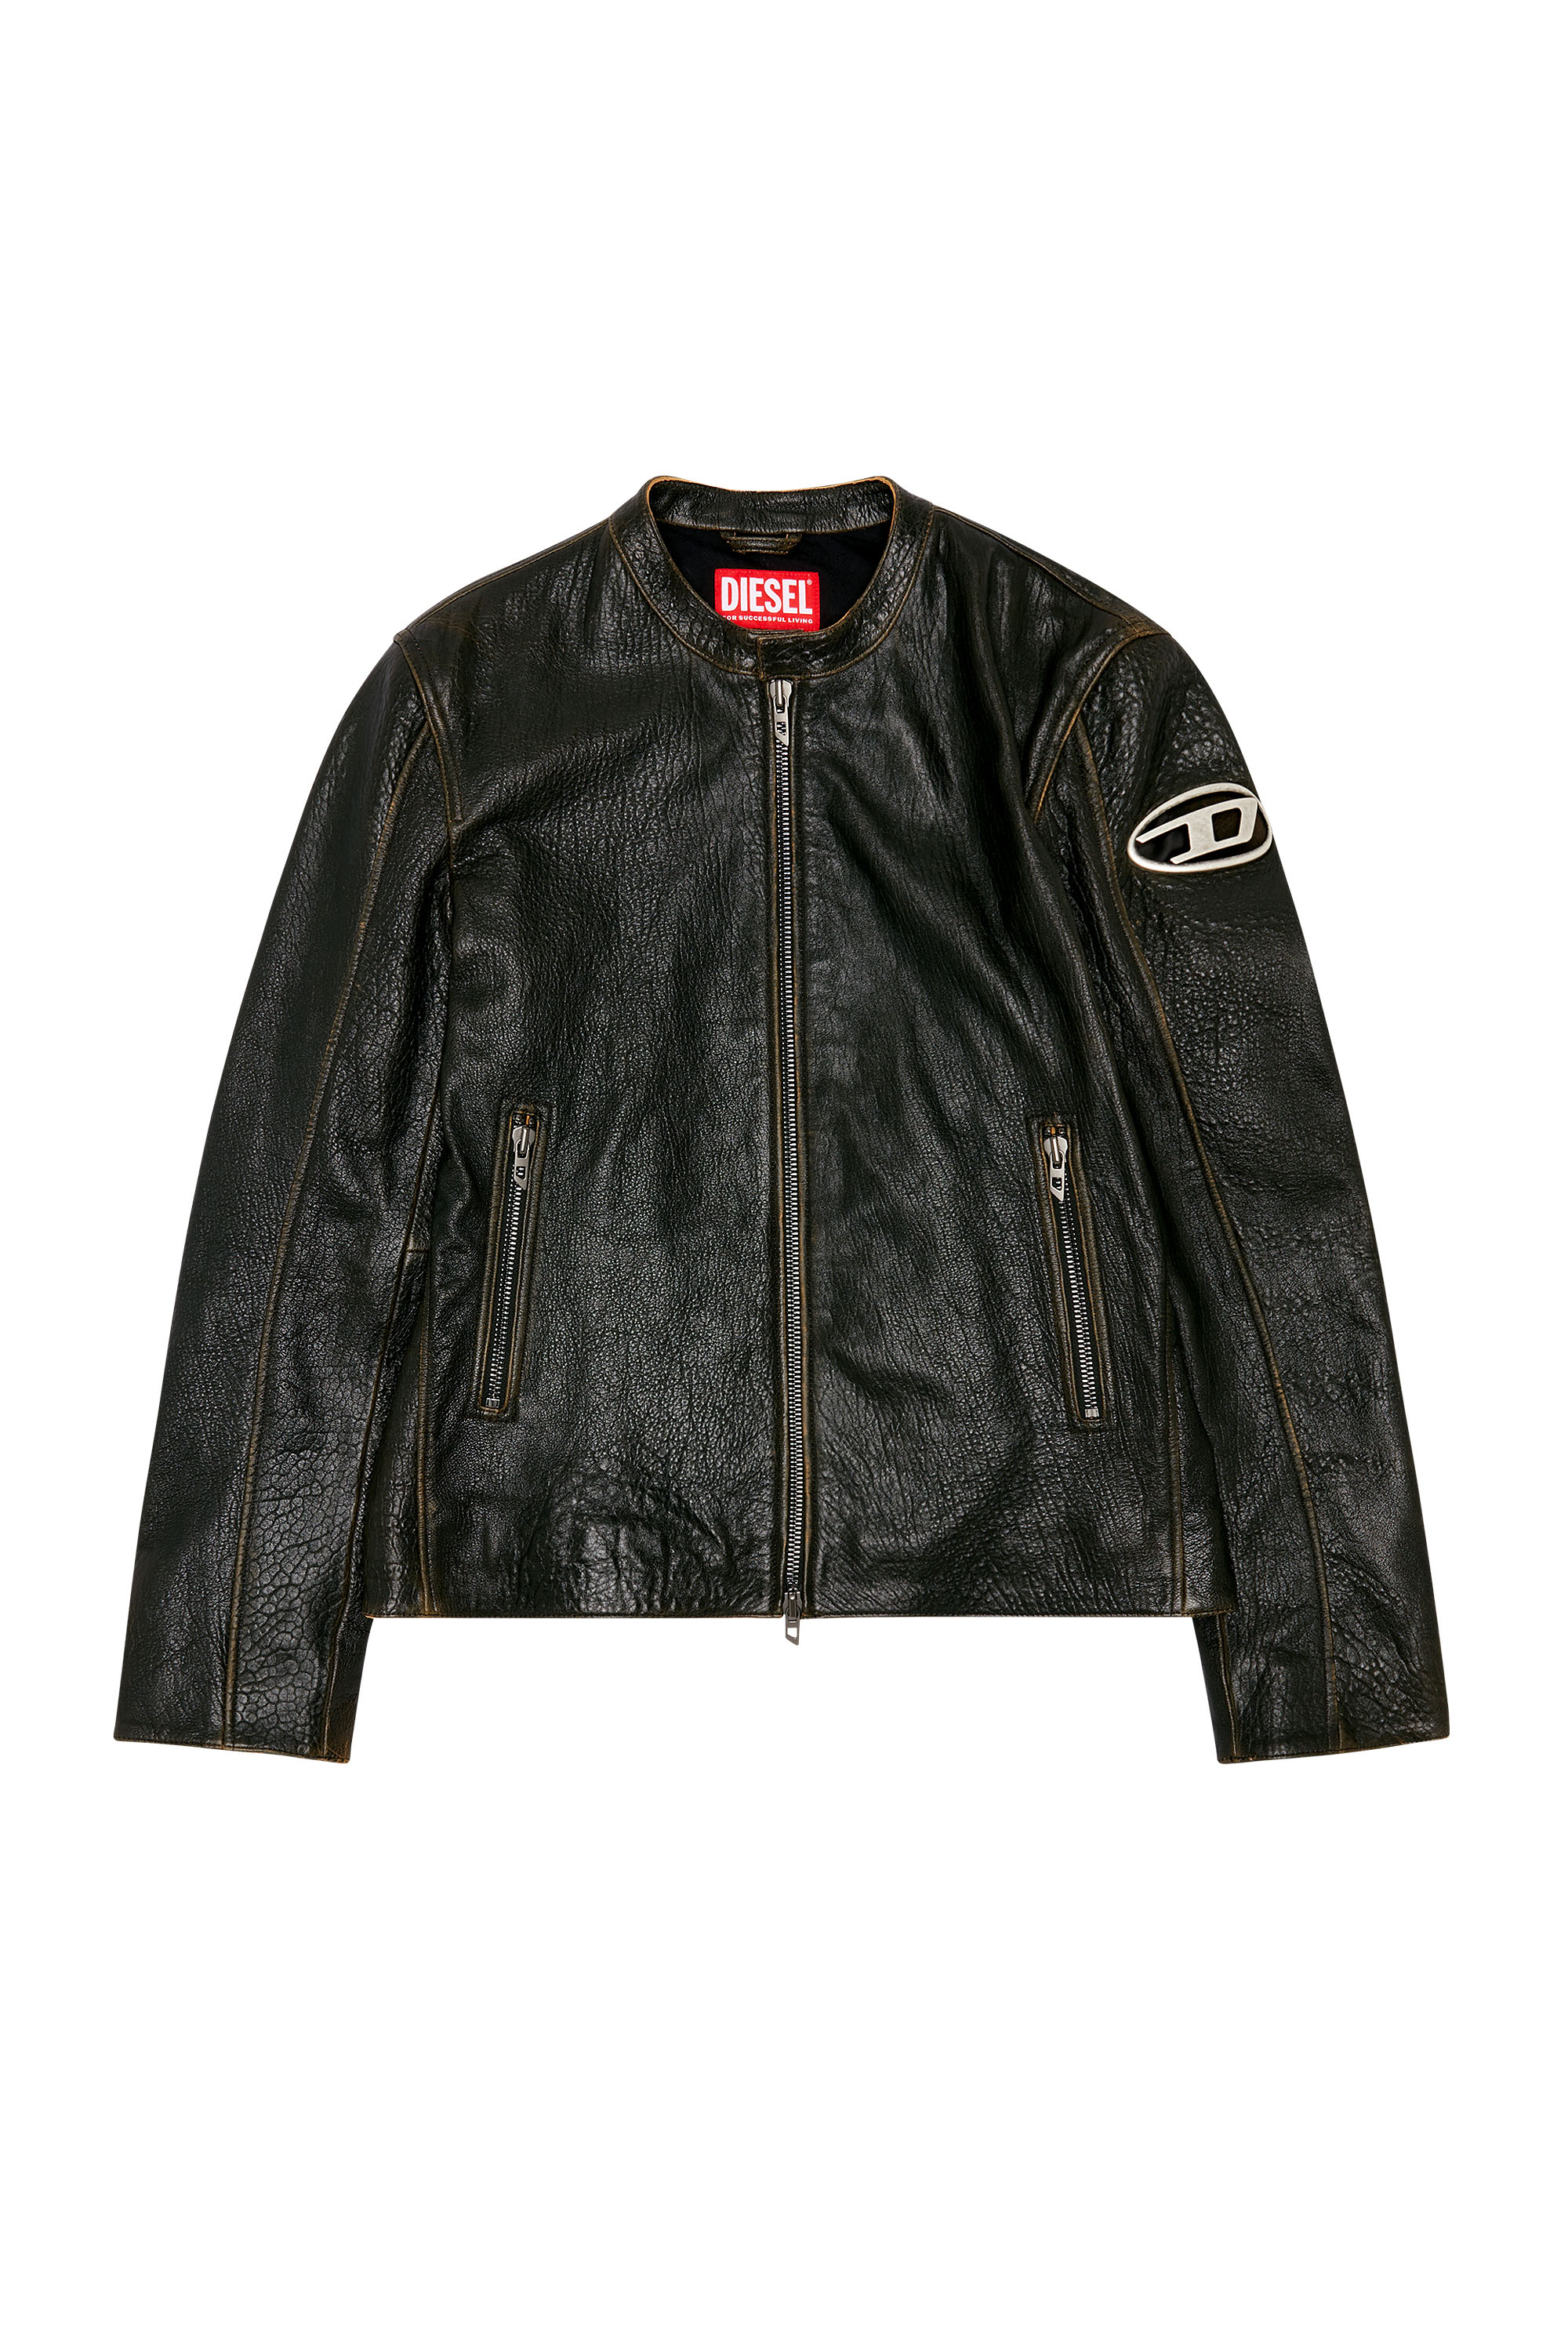 Diesel - L-COBBE, Man Biker jacket in wrinkled leather in Brown - Image 3